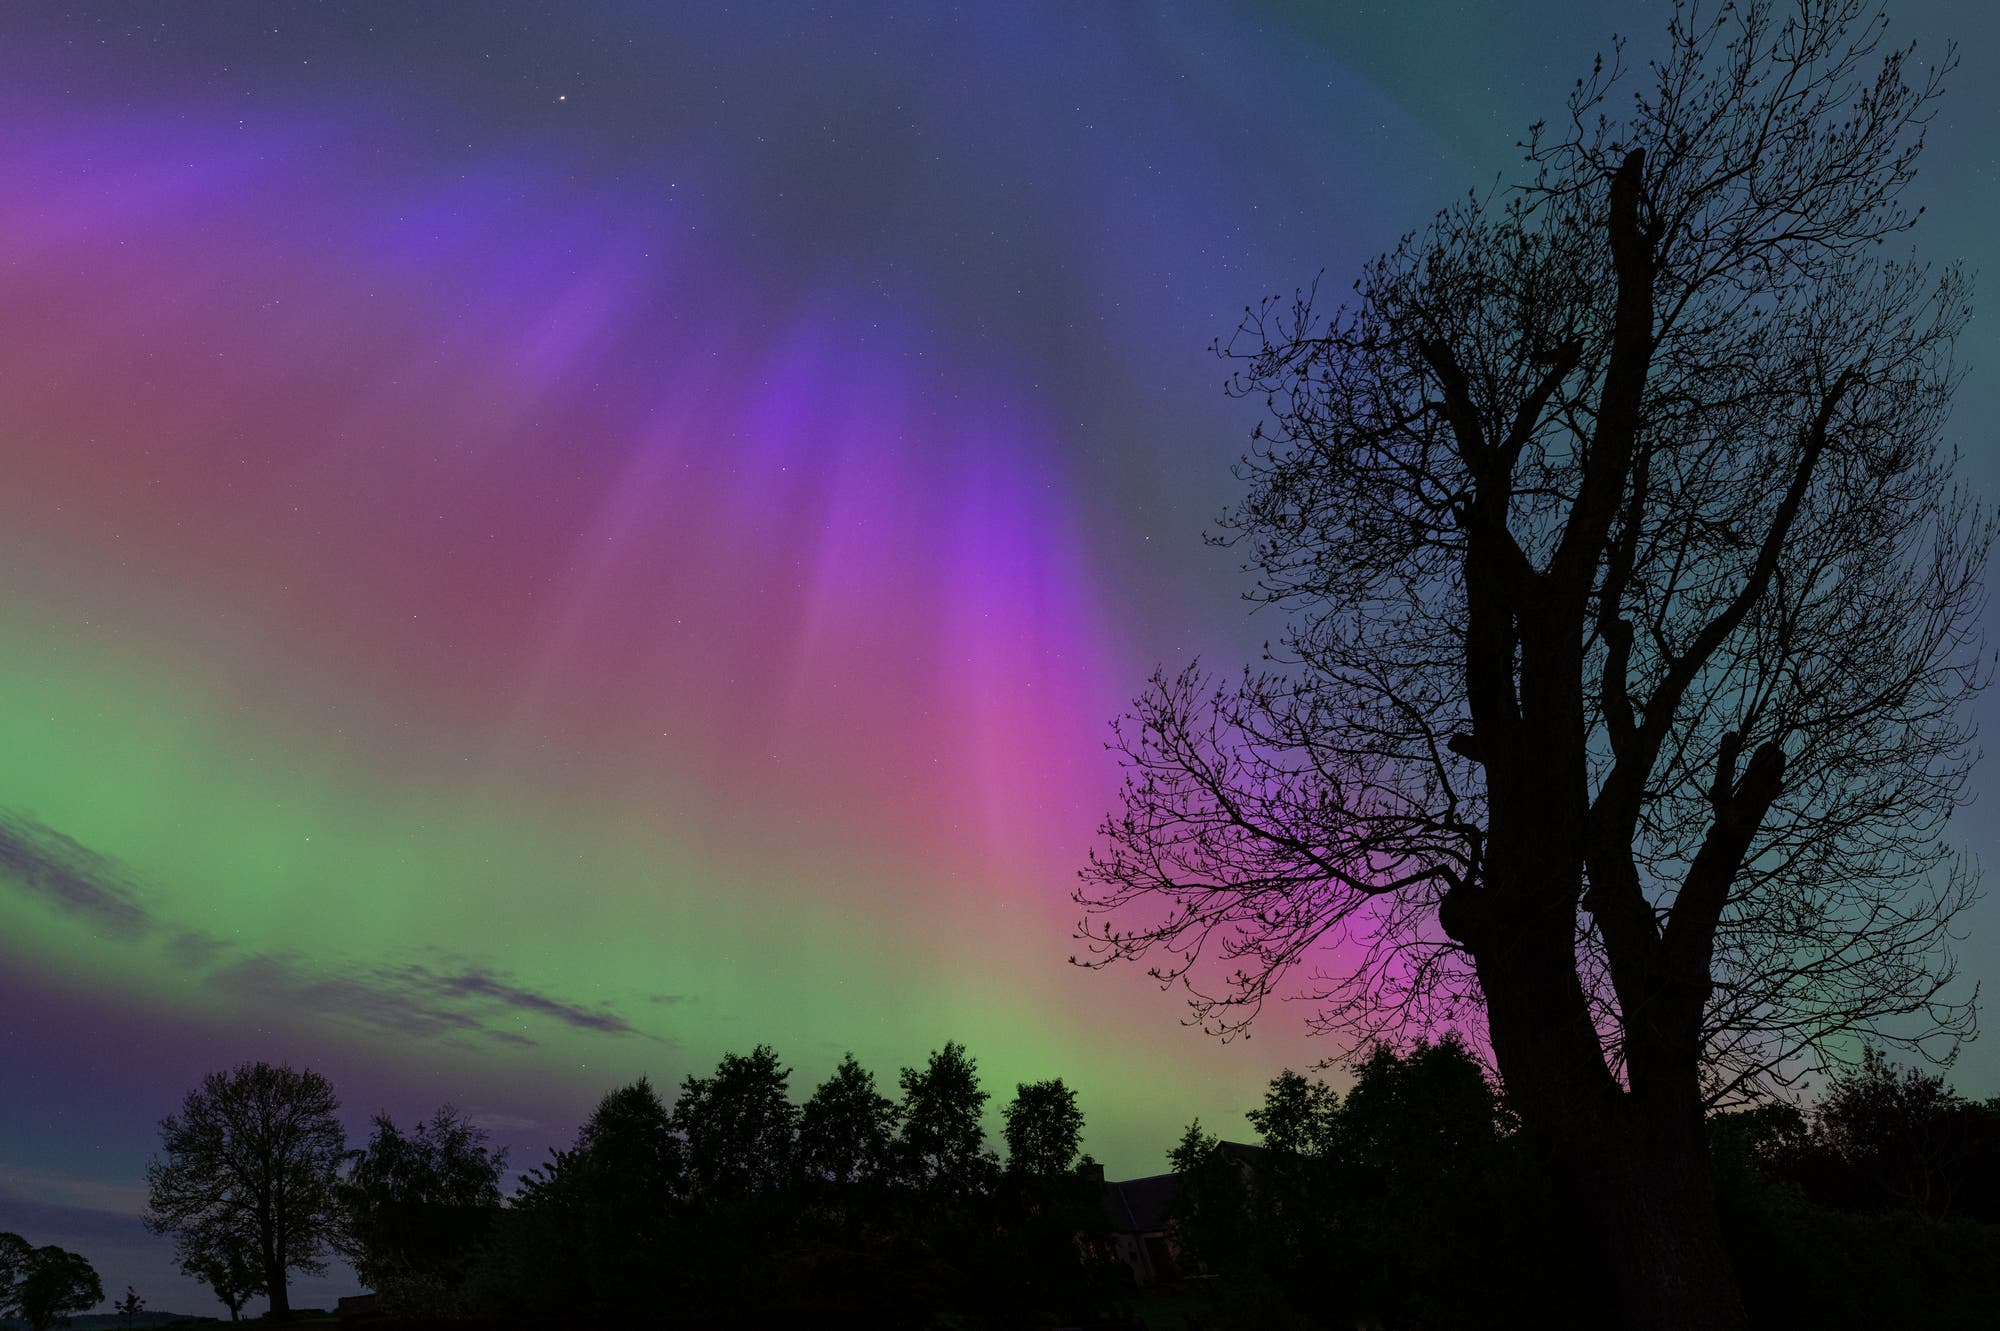 Aurora borealis in Regenbogenfarben, davor Silhouetten von Bäumen